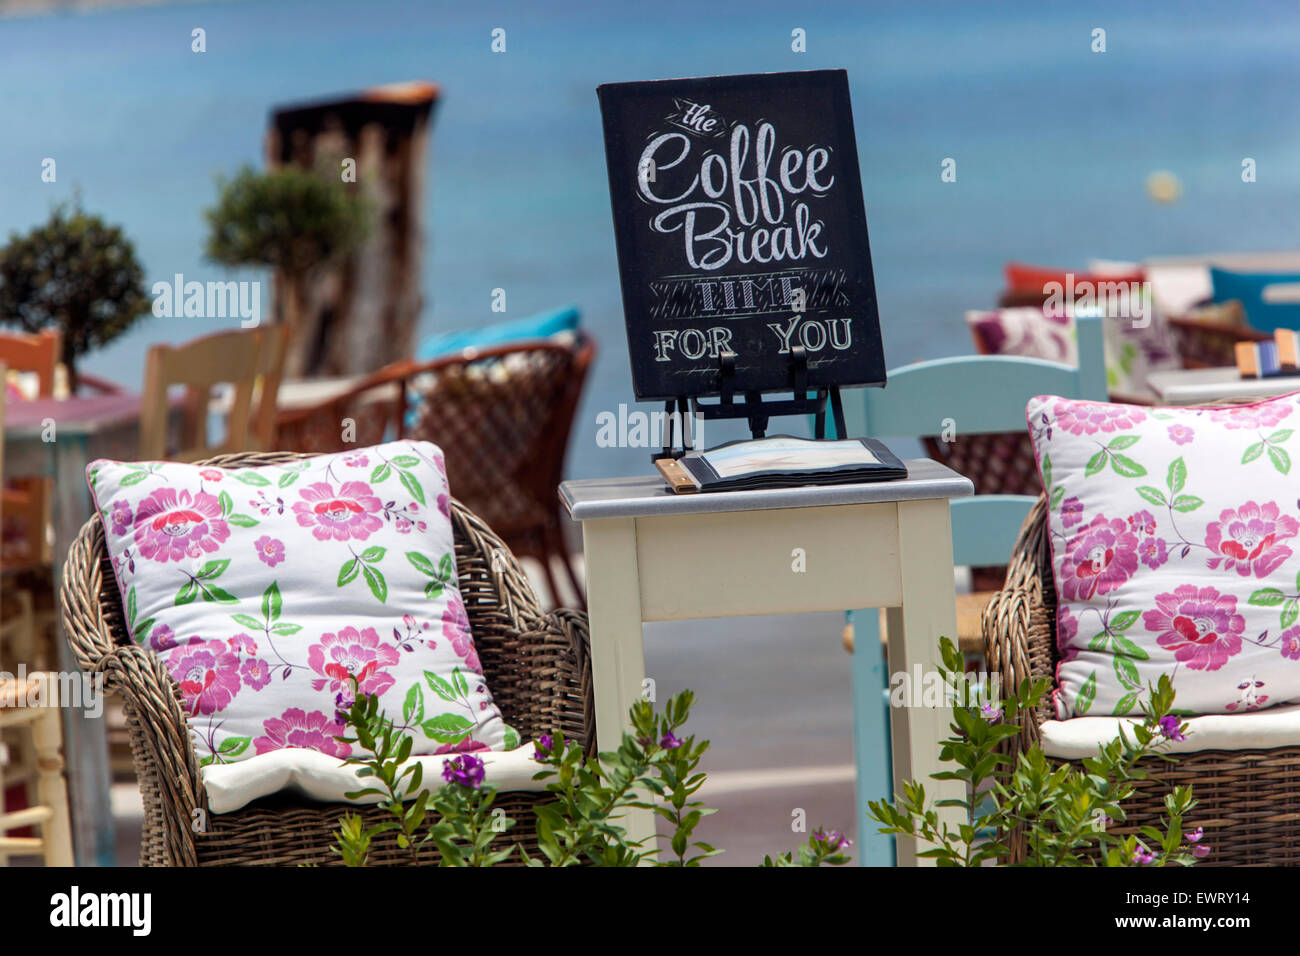 Kaffeepause am Meer, Kreta Cafe, griechische Taverna Kissen Plakias, Kreta, Griechenland Taverna am Strand, Wohlbefindens Ort ruhig Stockfoto